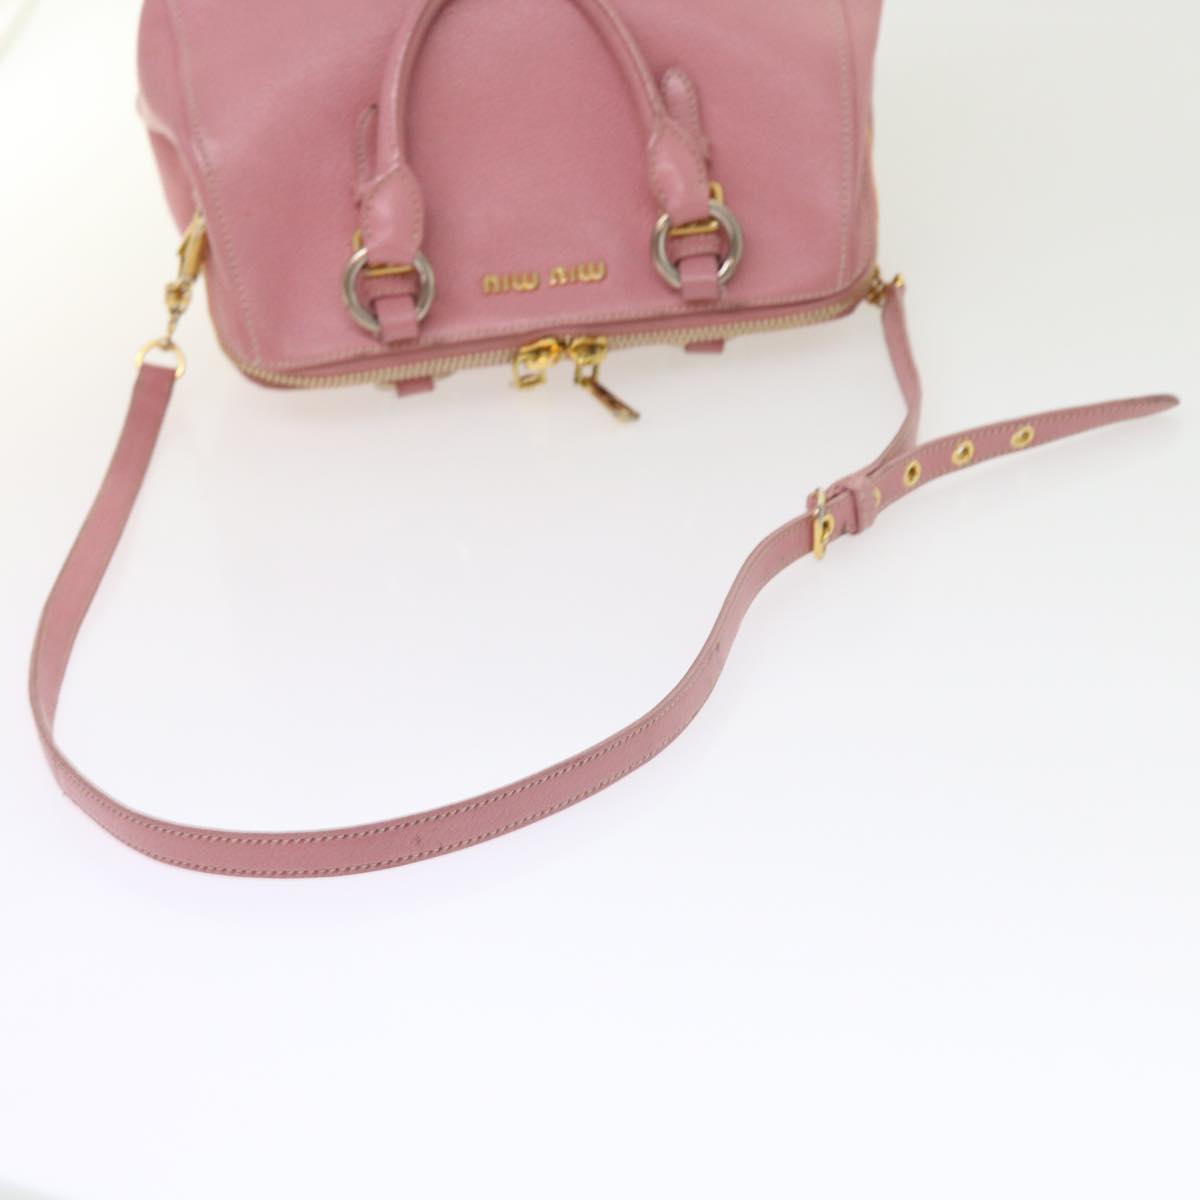 Miu Miu Hand Bag Leather 2way Pink Auth am5042